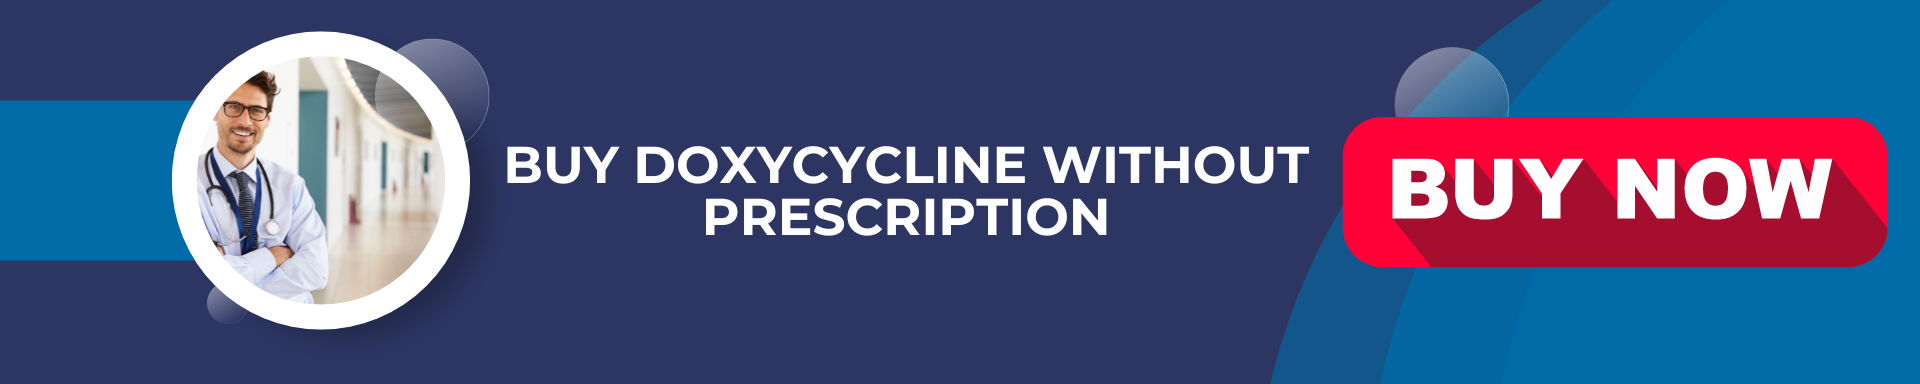 Buy doxycycline online